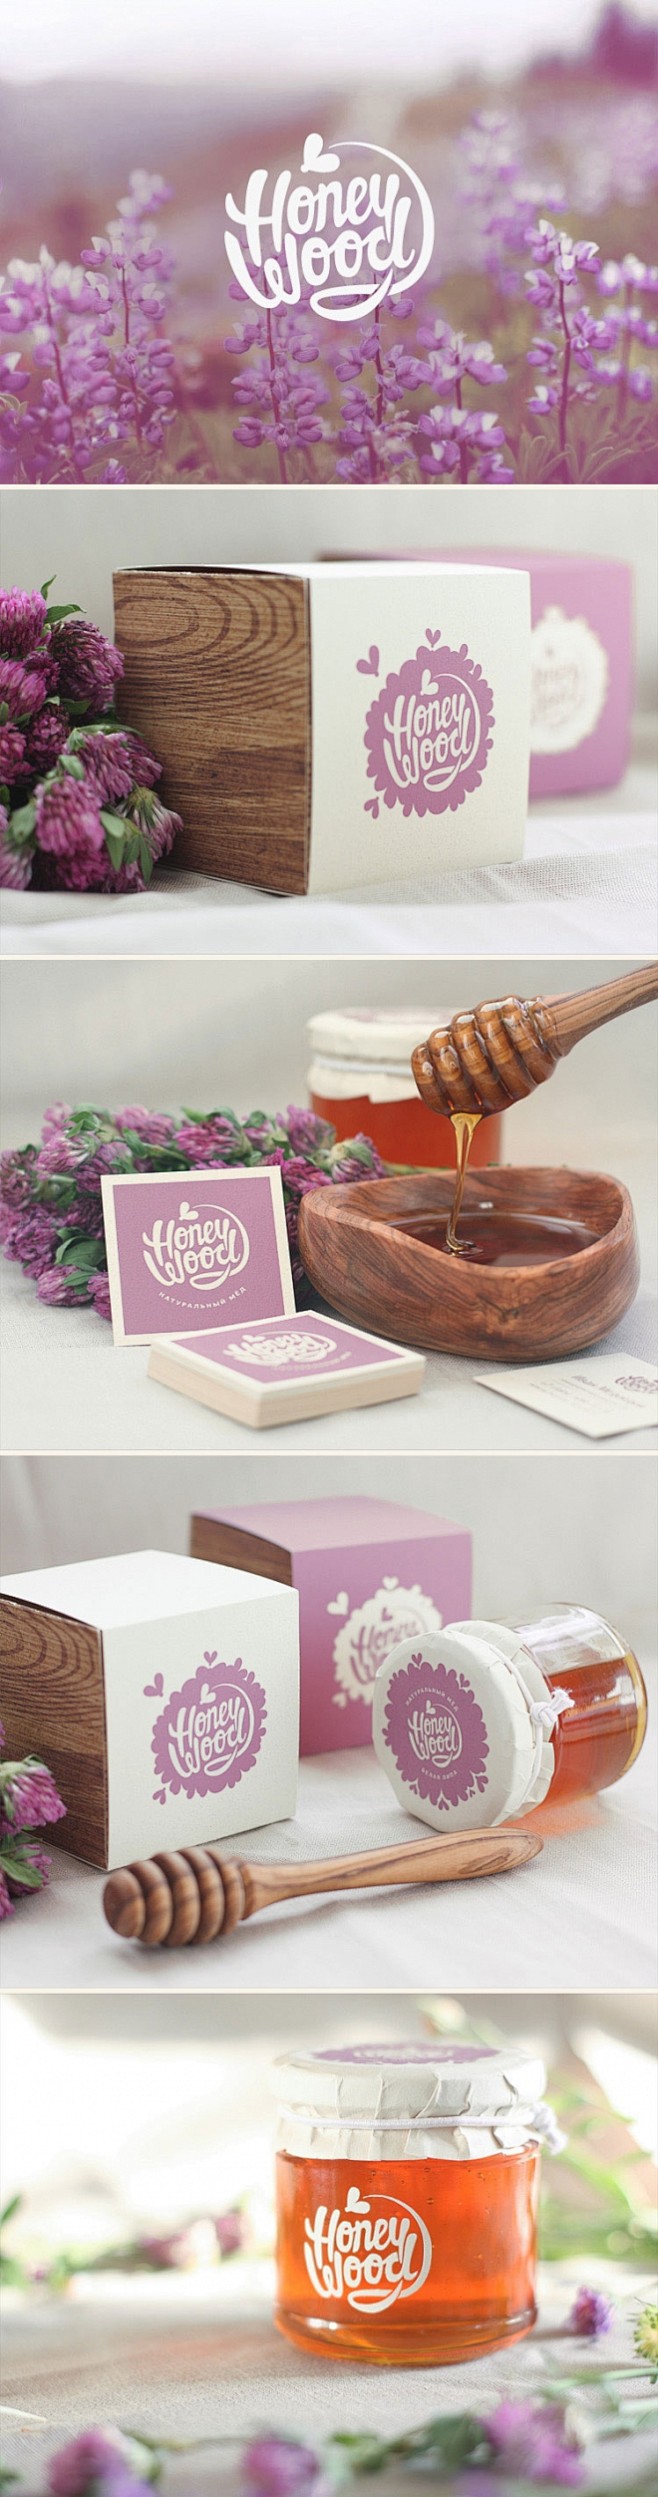 Honey Wood蜂蜜品牌设计 #Lo...